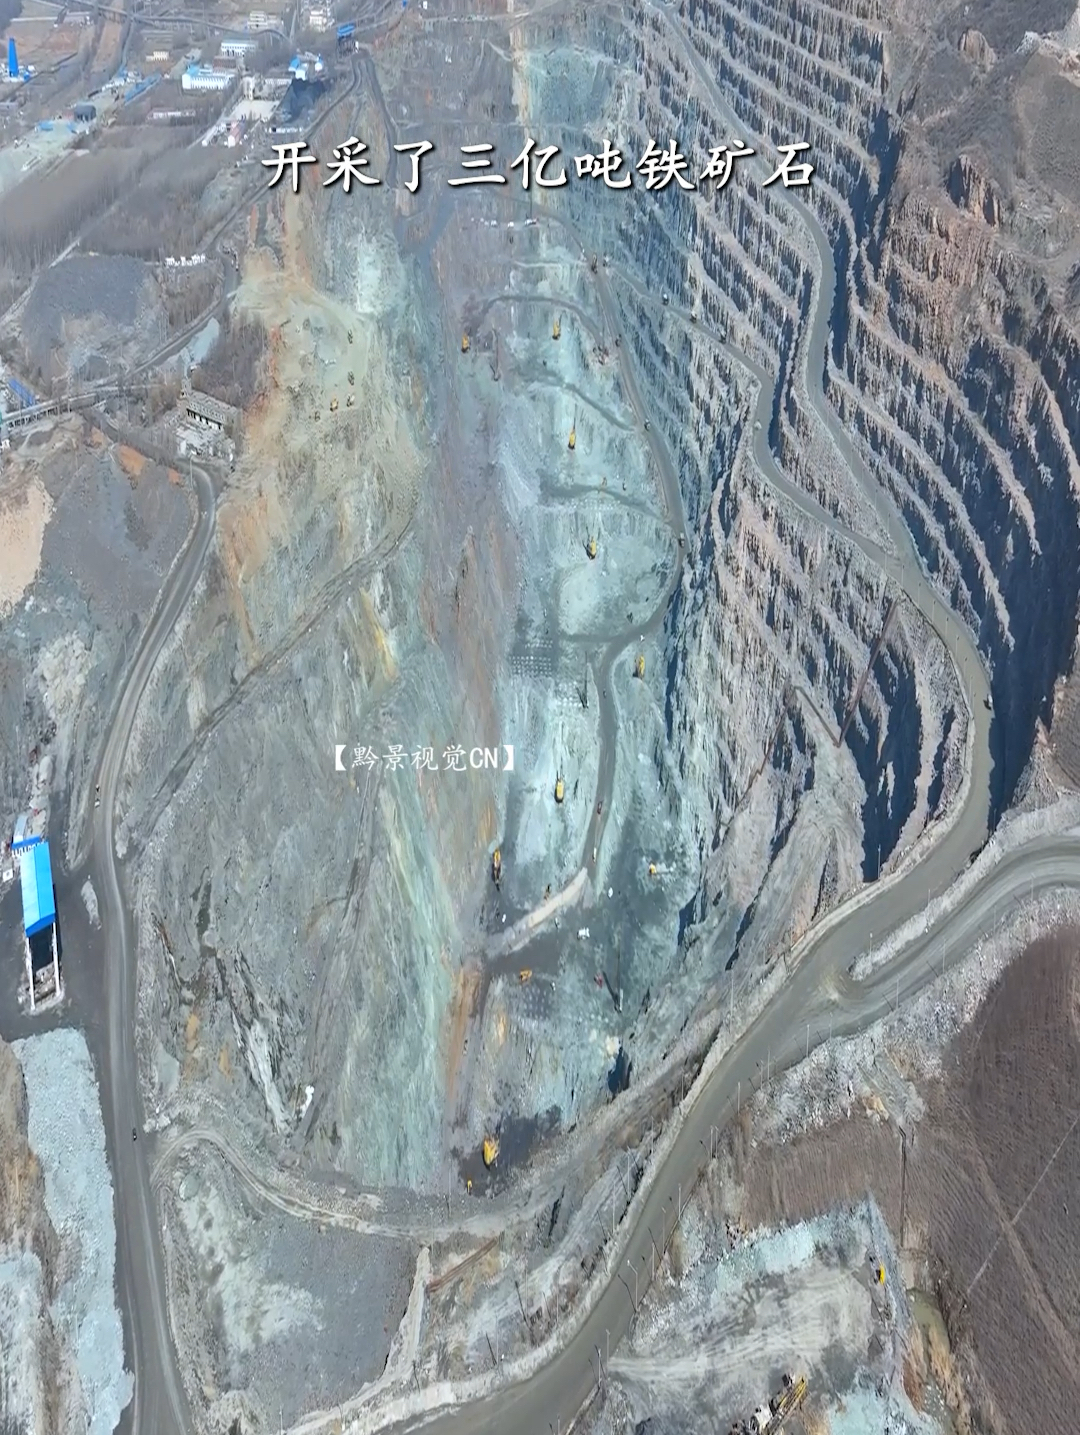 亚洲最深的铁矿山，大孤山铁矿，为我国做出了巨大贡献！矿山深不见底，实在是太壮观了！#矿山 #矿坑 #